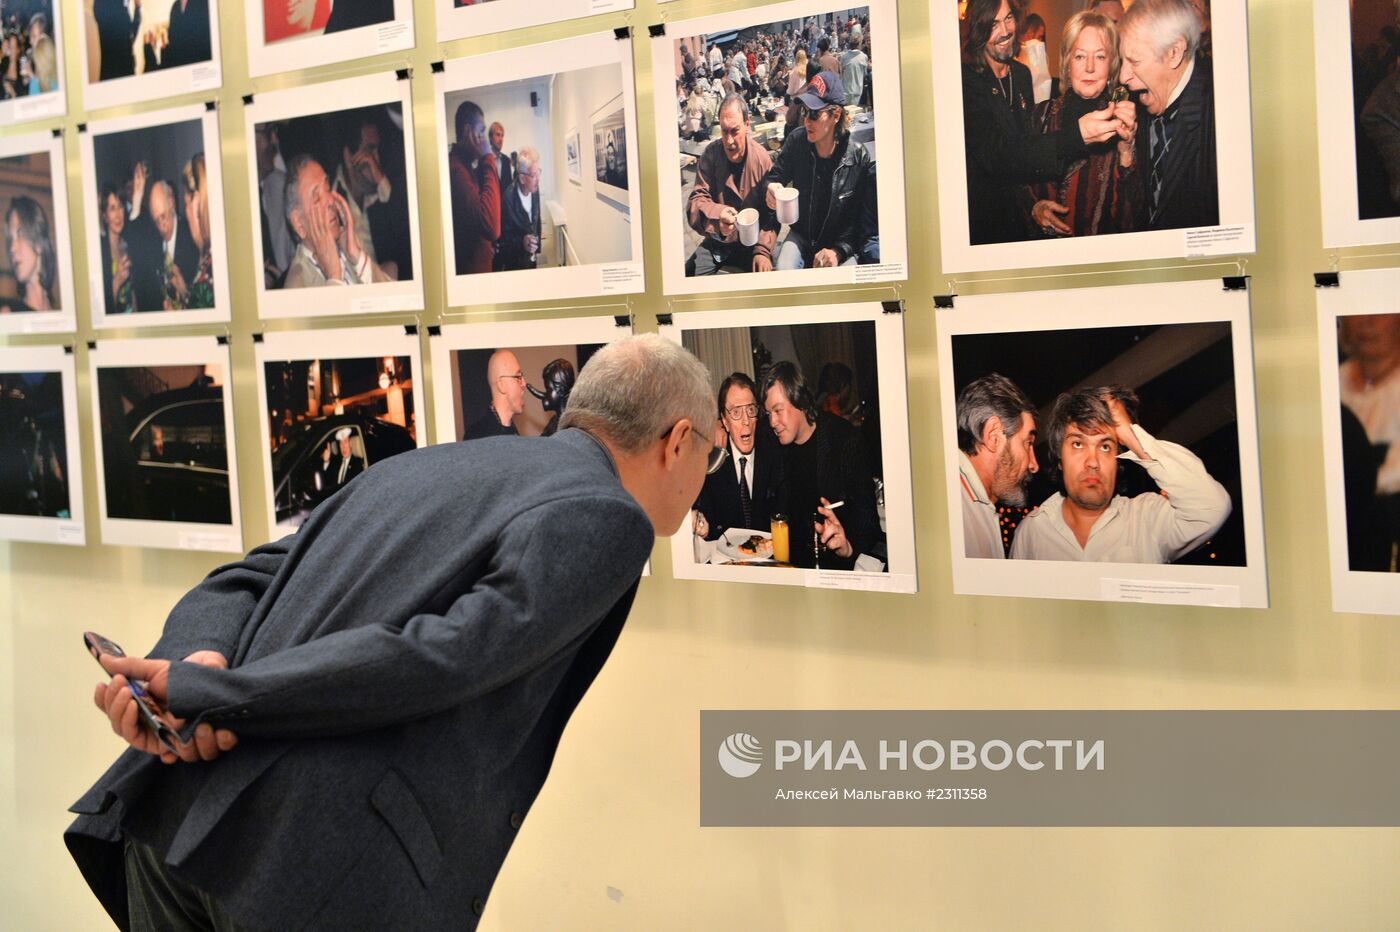 Открытие выставки фотографа Валерия Левитина в Омске